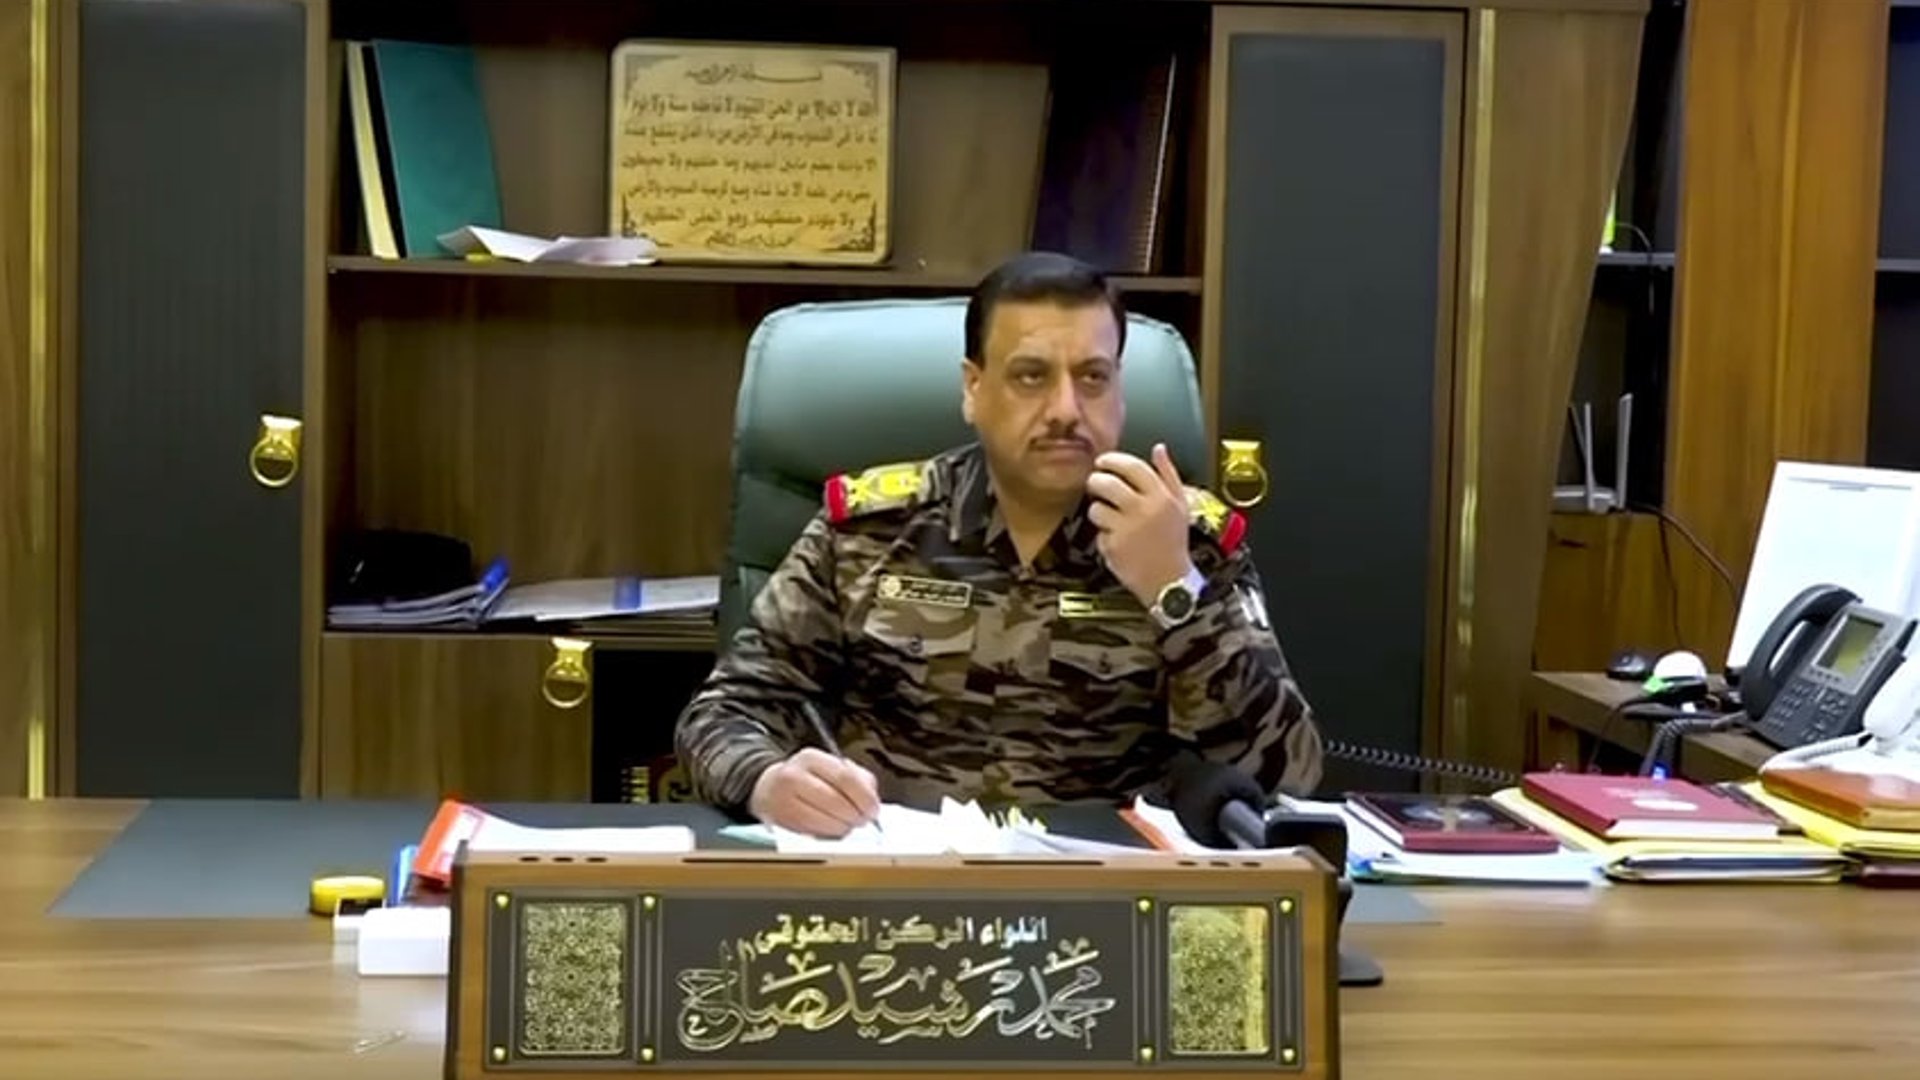 فيديو: قائد شرطة الأنبار يوجه بالعفو عن الموقوفين بعقوبات انضباطية بمناسبة رمضان